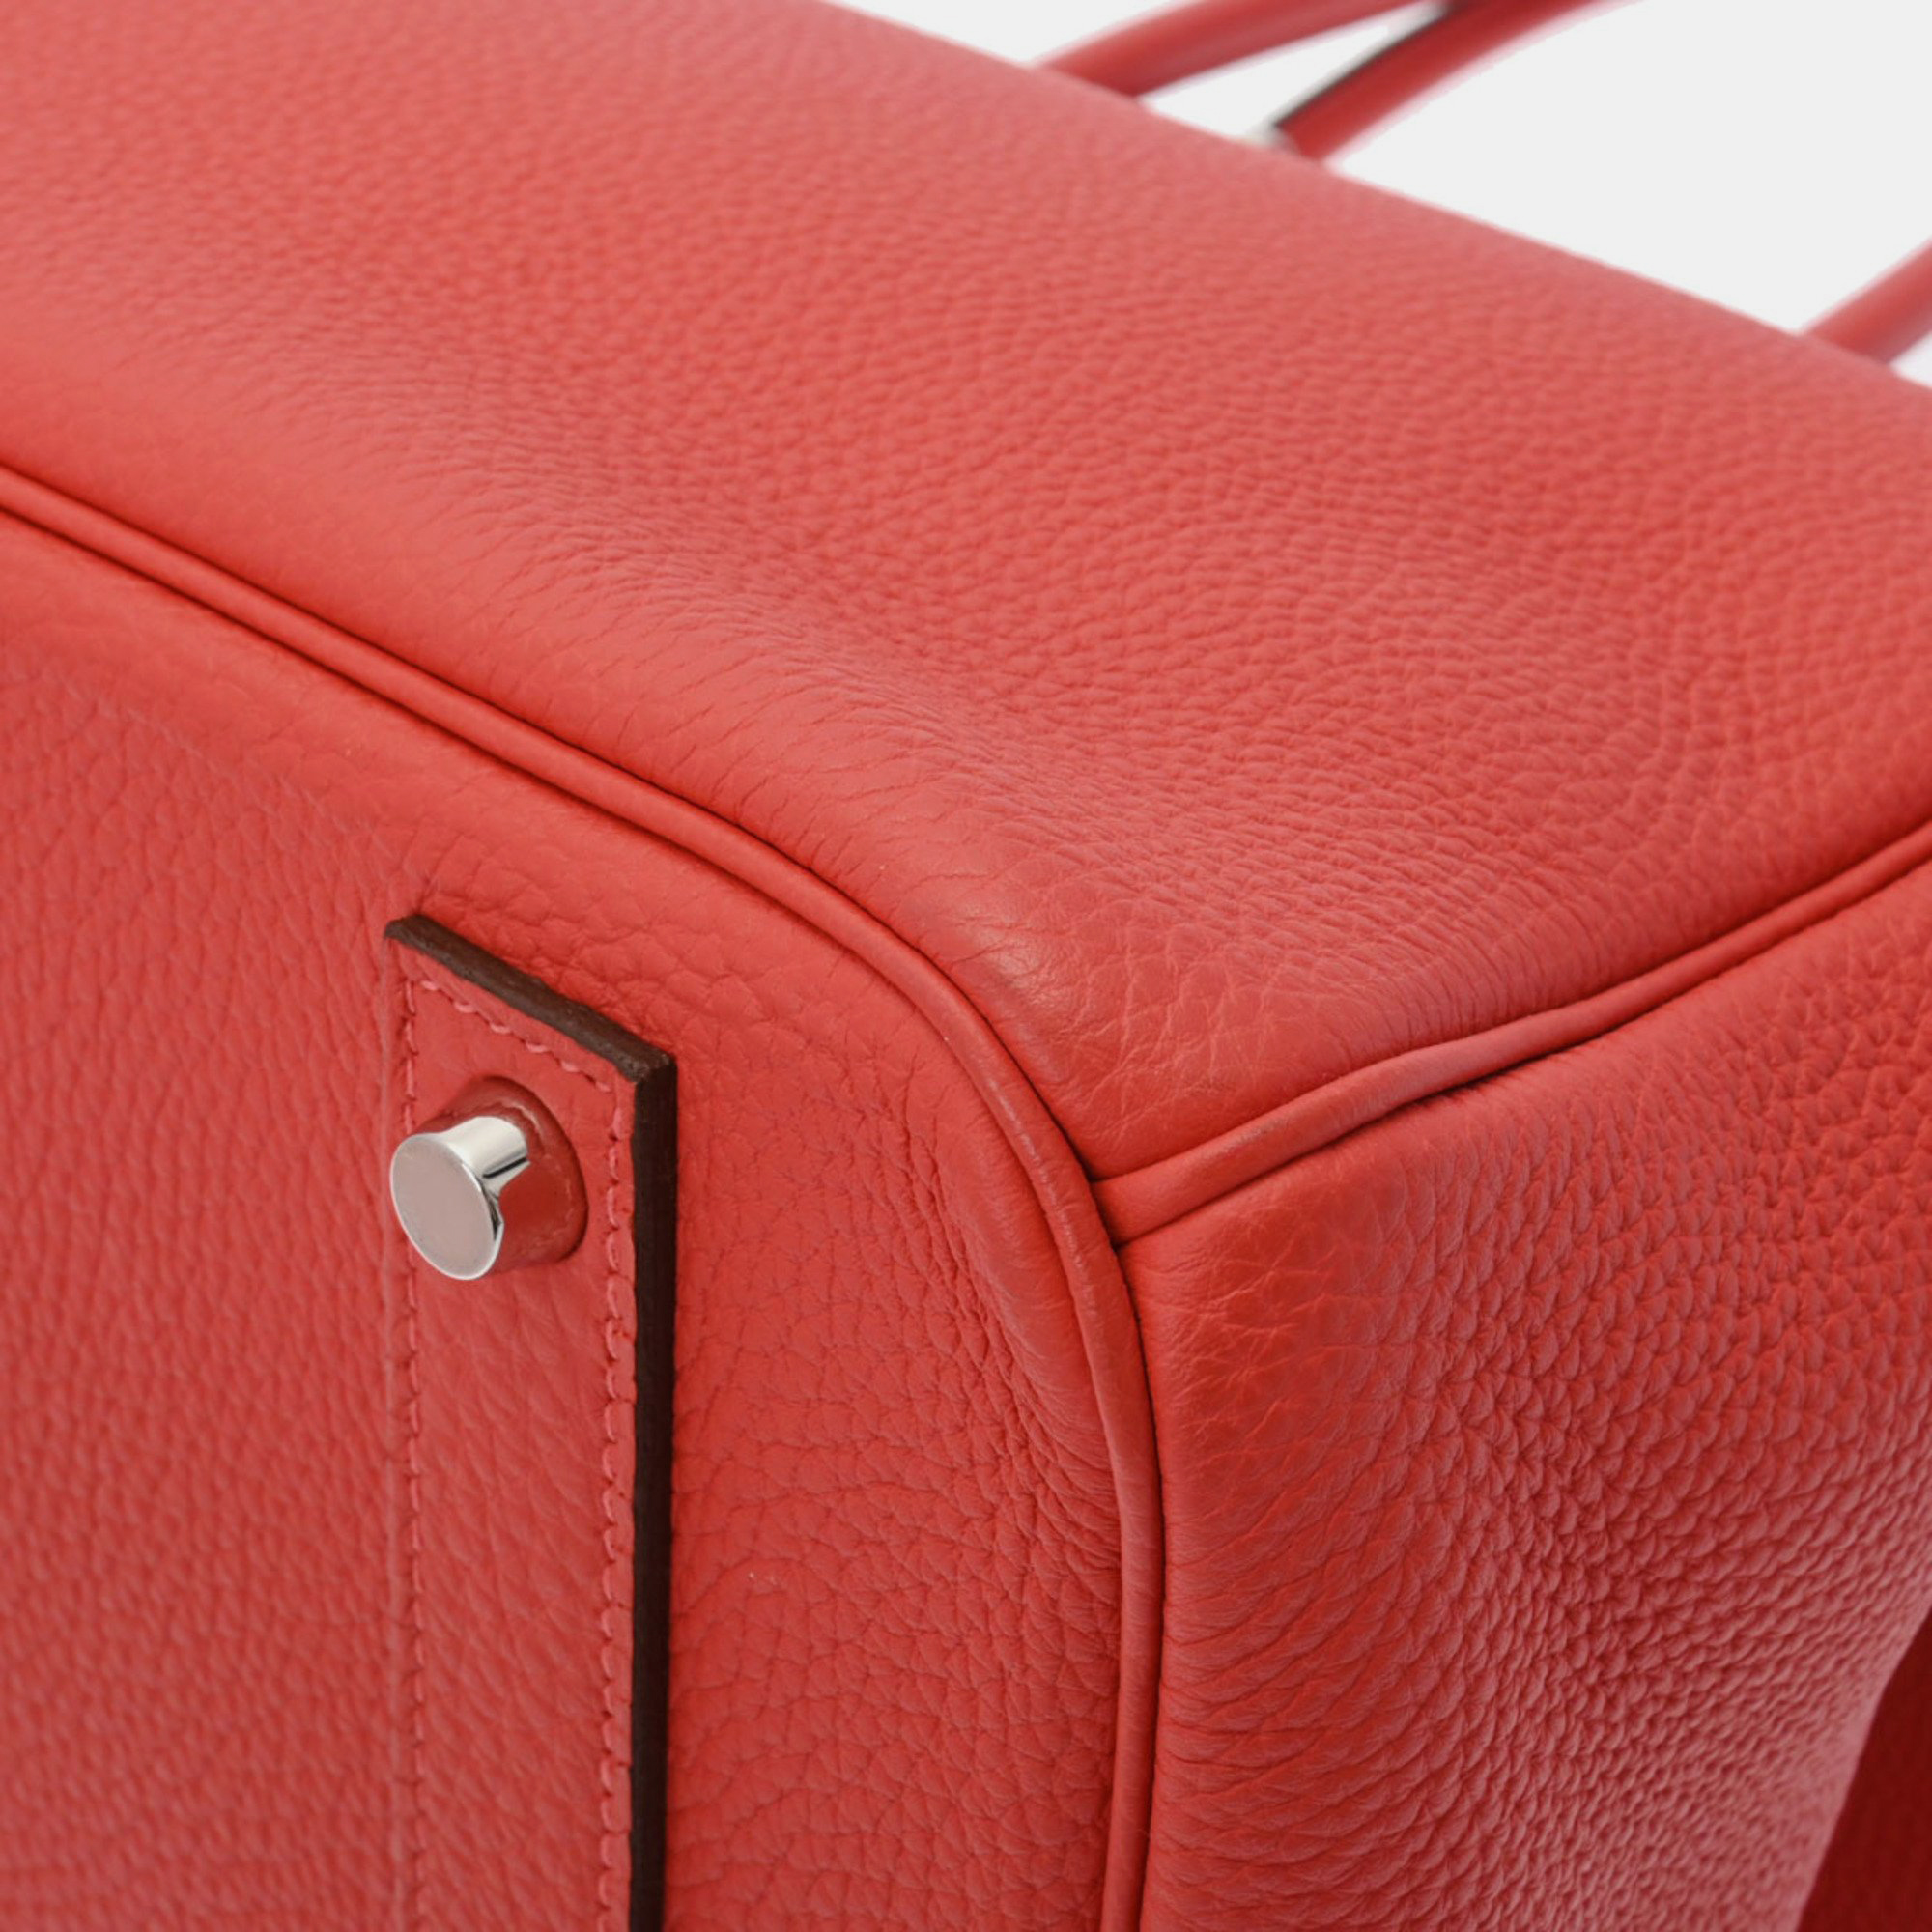 HERMES Birkin 40 Rouge Pivoine Palladium Hardware R Stamp (around 2014) Unisex Togo Handbag